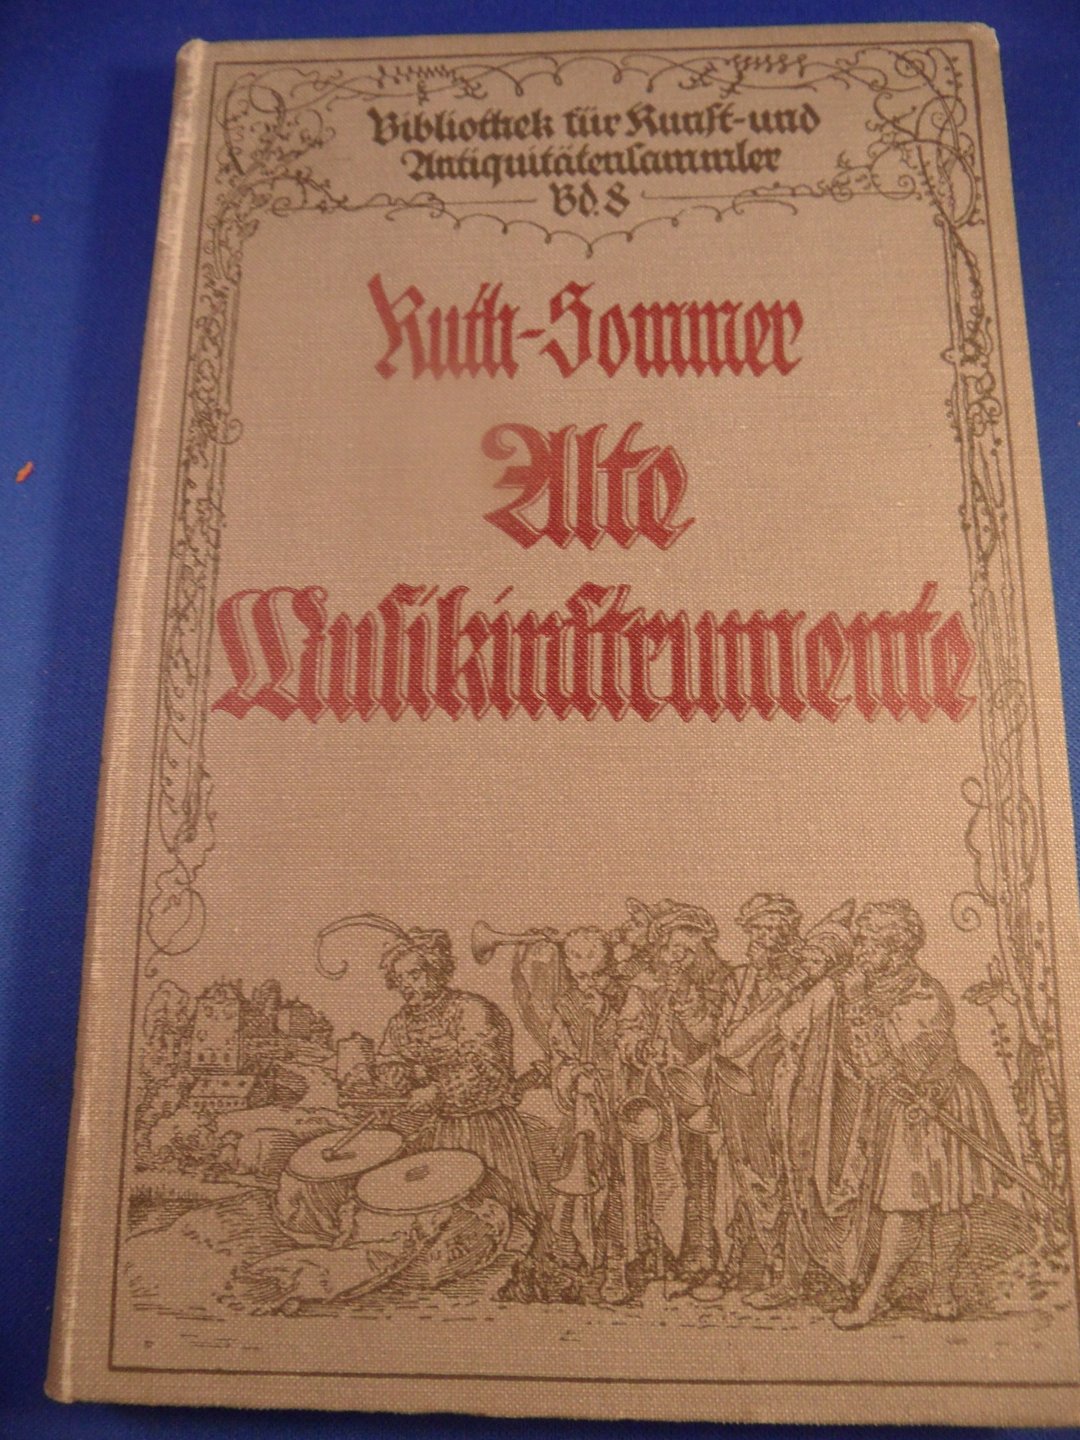 Ruth-Sommer Hermann - alte Musikinstrumente. Ein Leitfaden für Sammler.